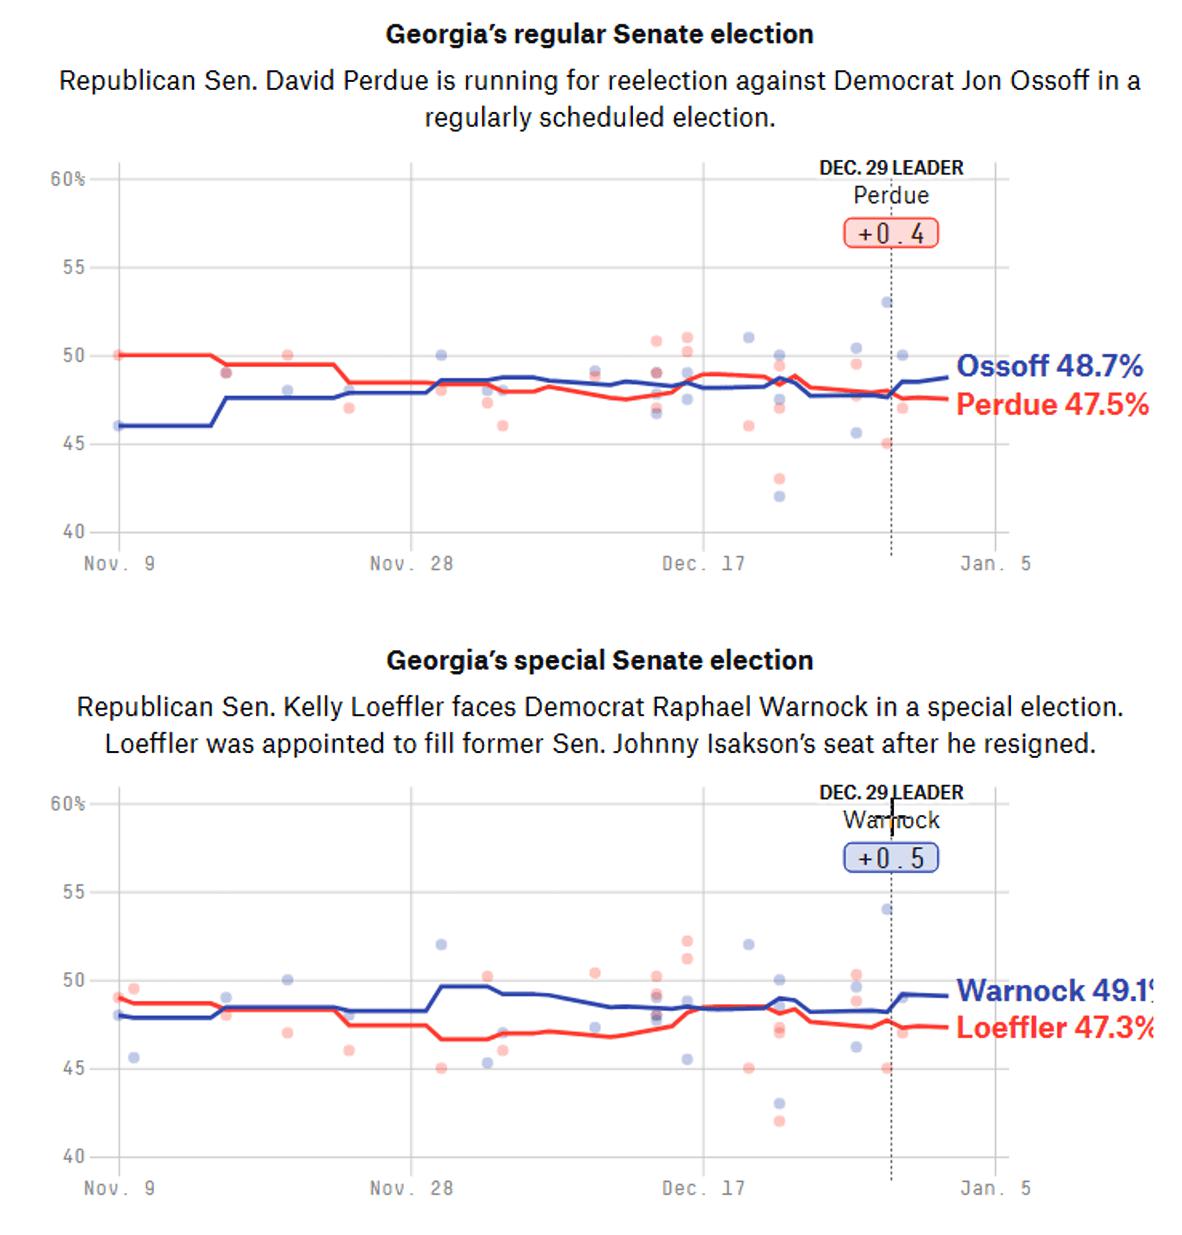 Democrats are In the Lead in Both Georgia Senate Races